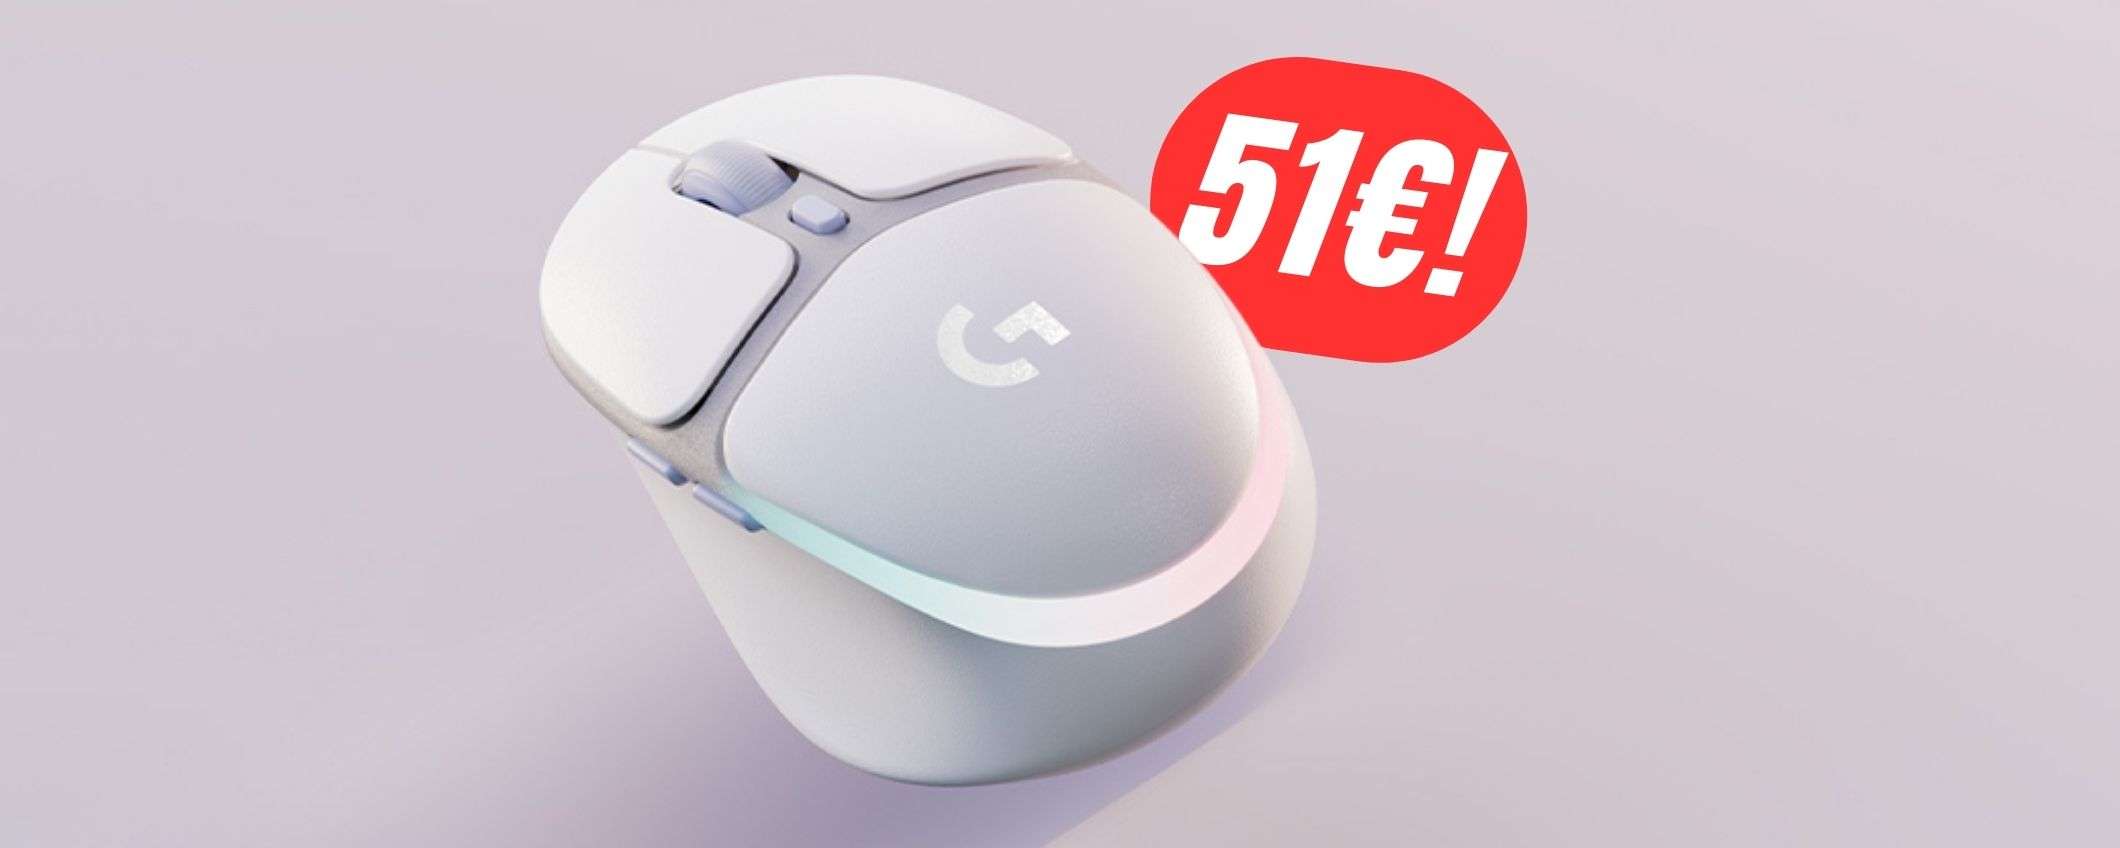 Perfetto per le mani piccole e wireless: il mouse Logitech è SCONTATO di -67€!